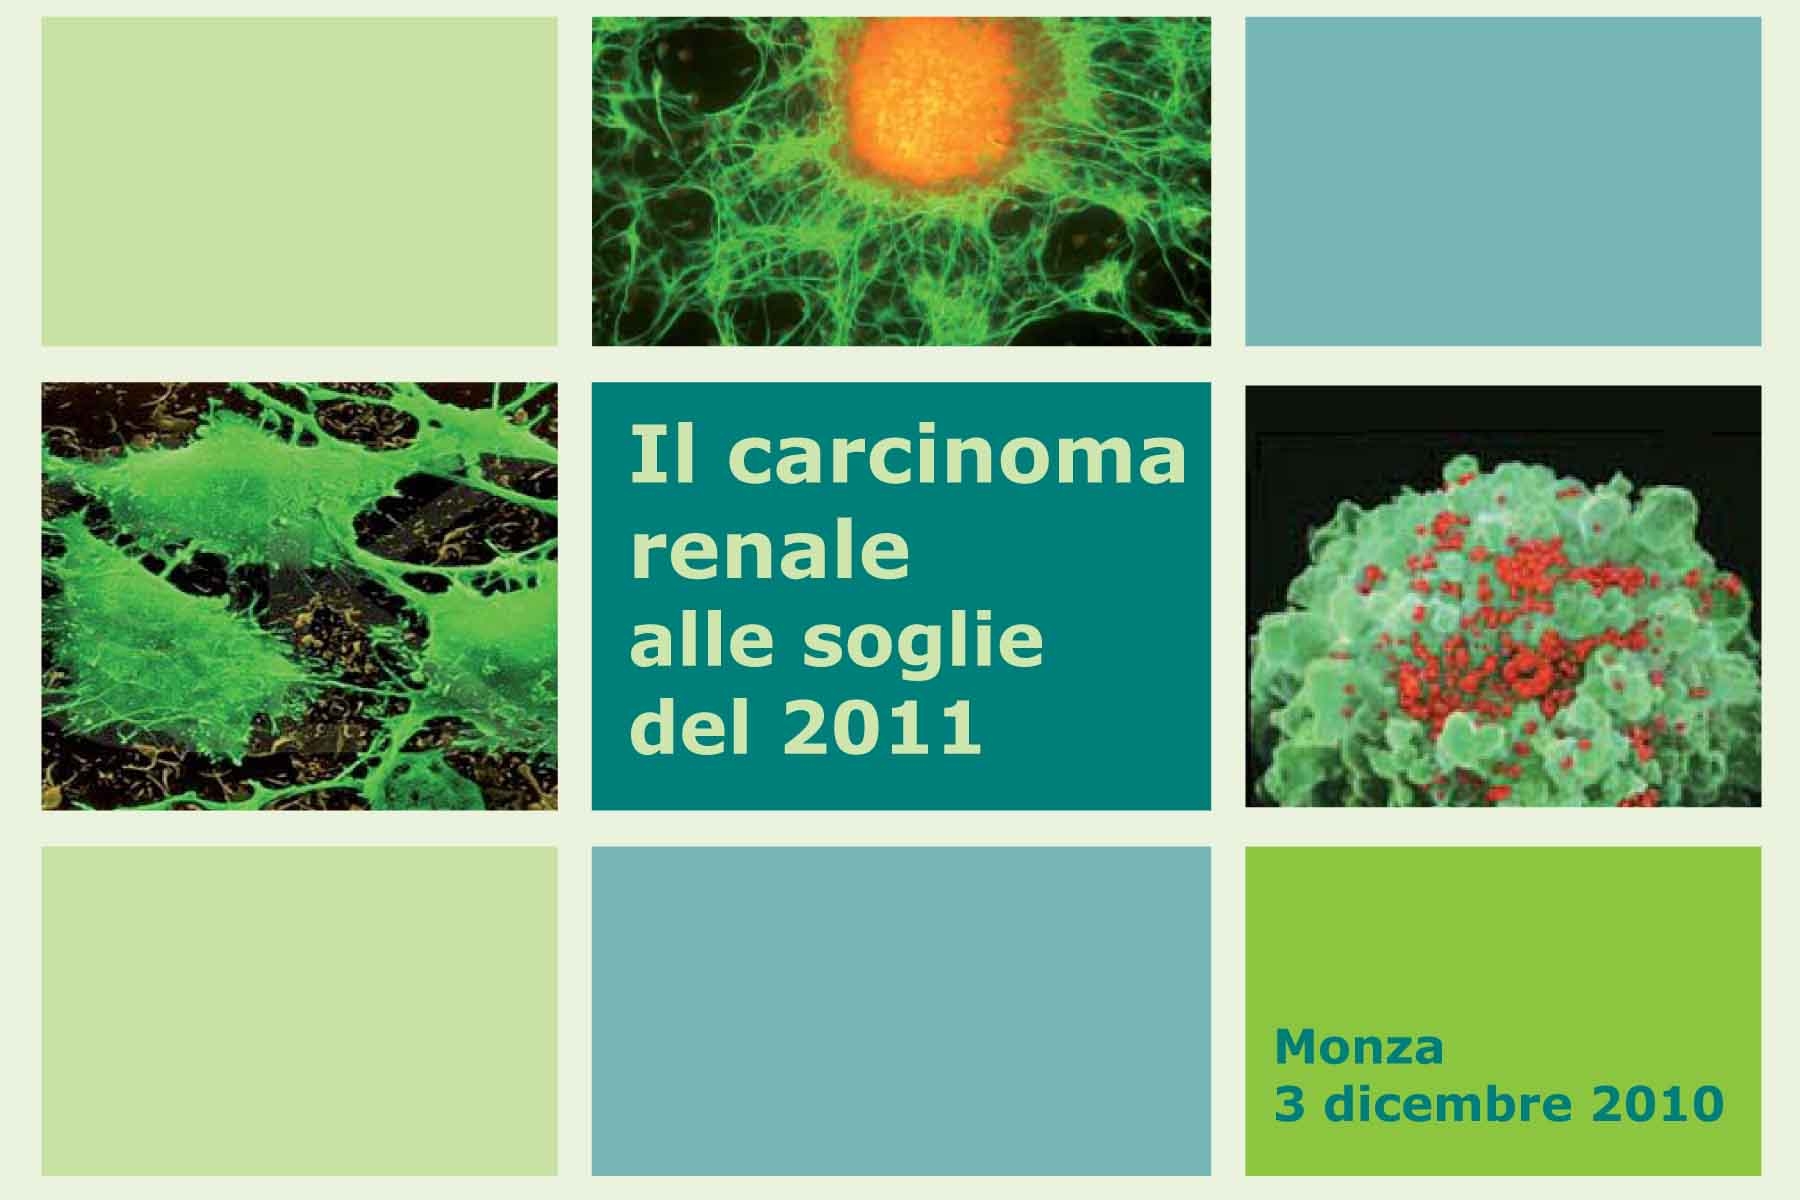 Carcinoma Renale alle soglie del 2011